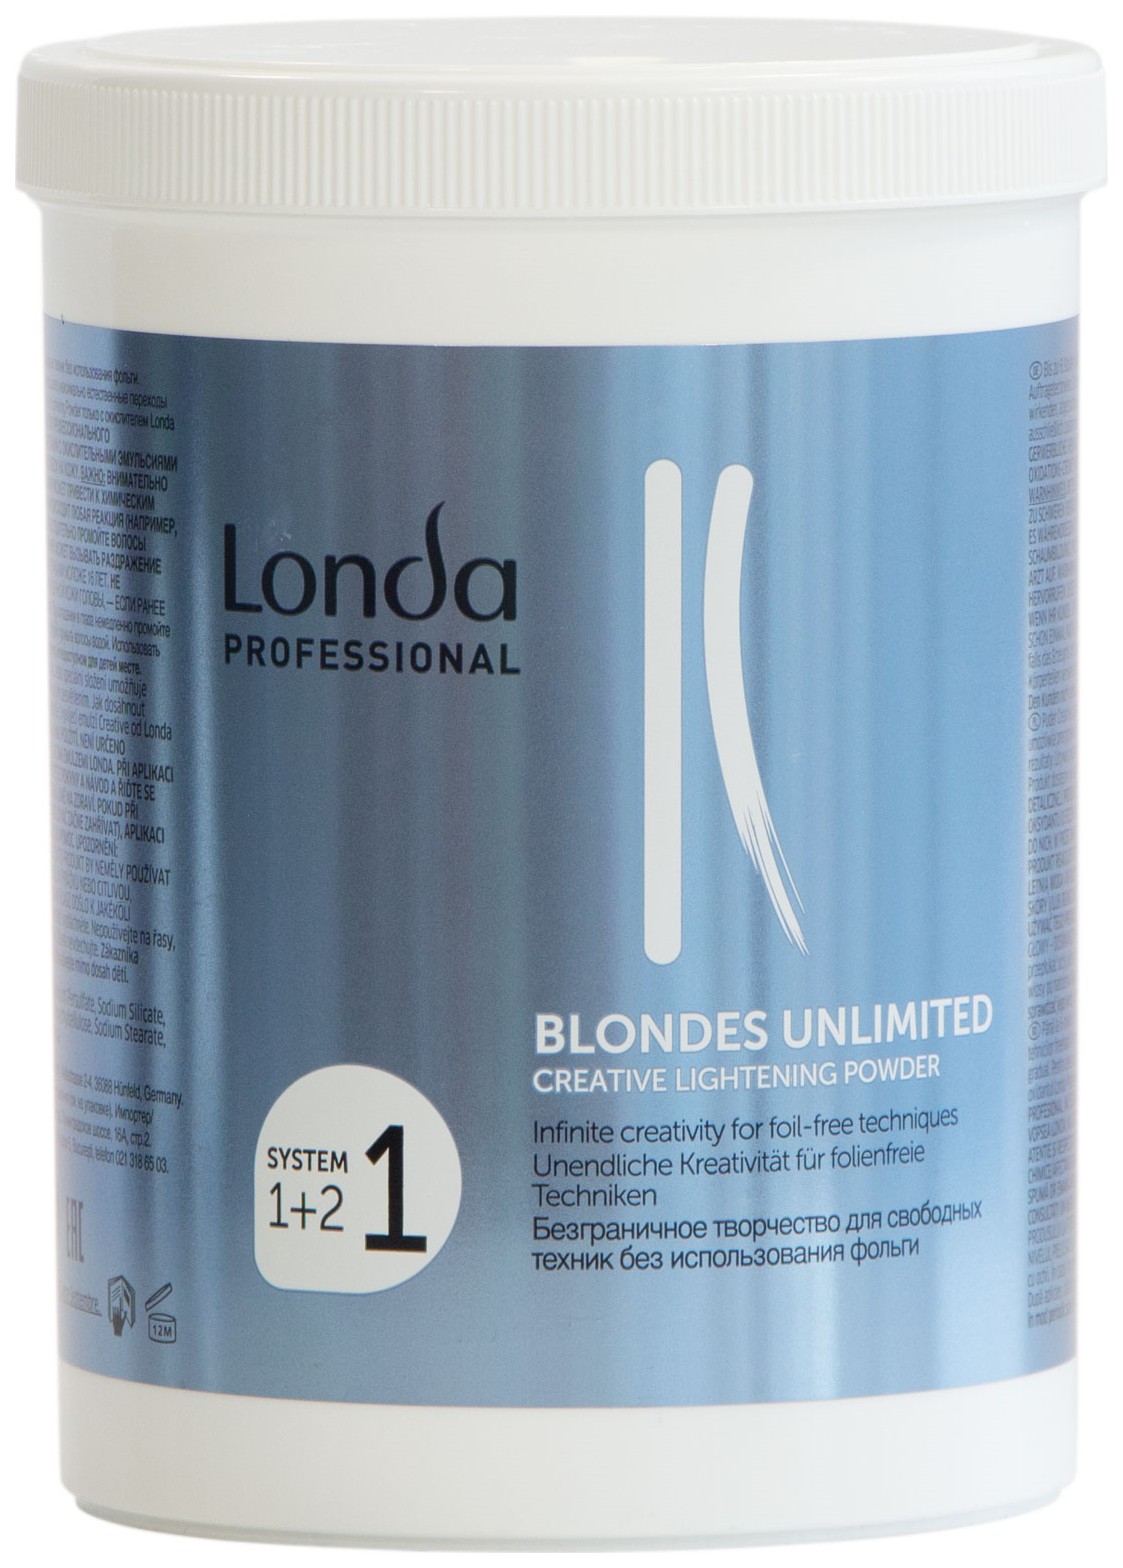 Осветлитель Londa Professional Blondes Unlimited Creative Lightening Powder 400 г осветляющая пудра с защитным комплексом plex bleach 6917es 500 мл